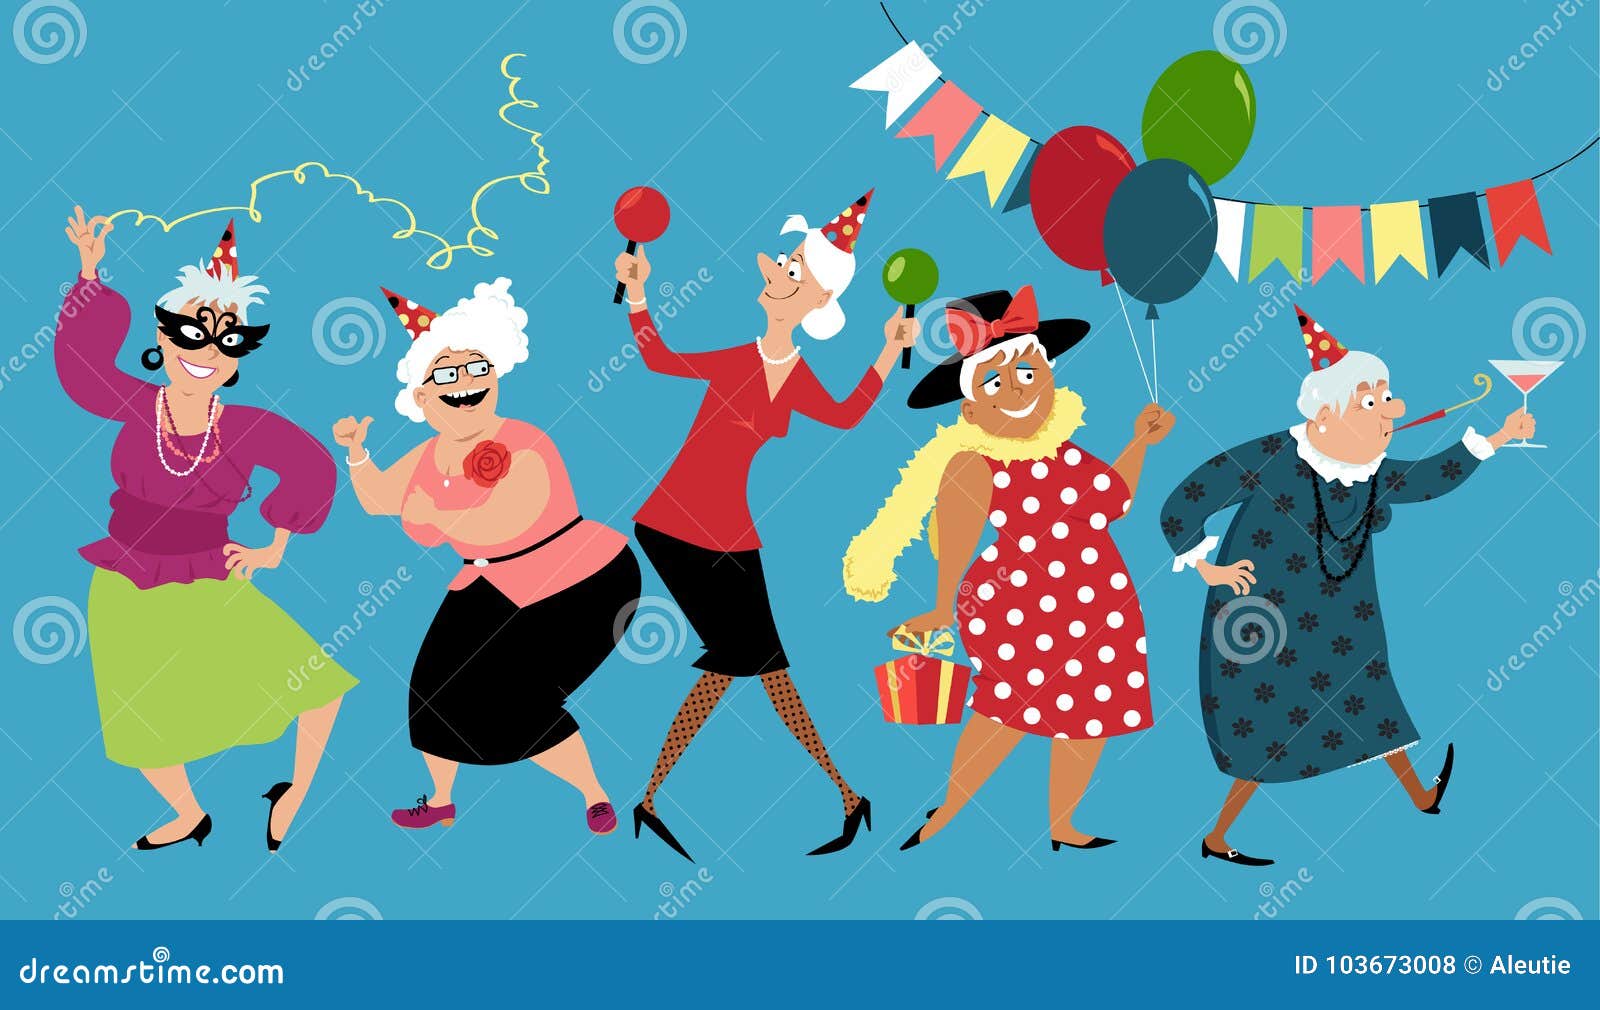 senior ladies celebrate